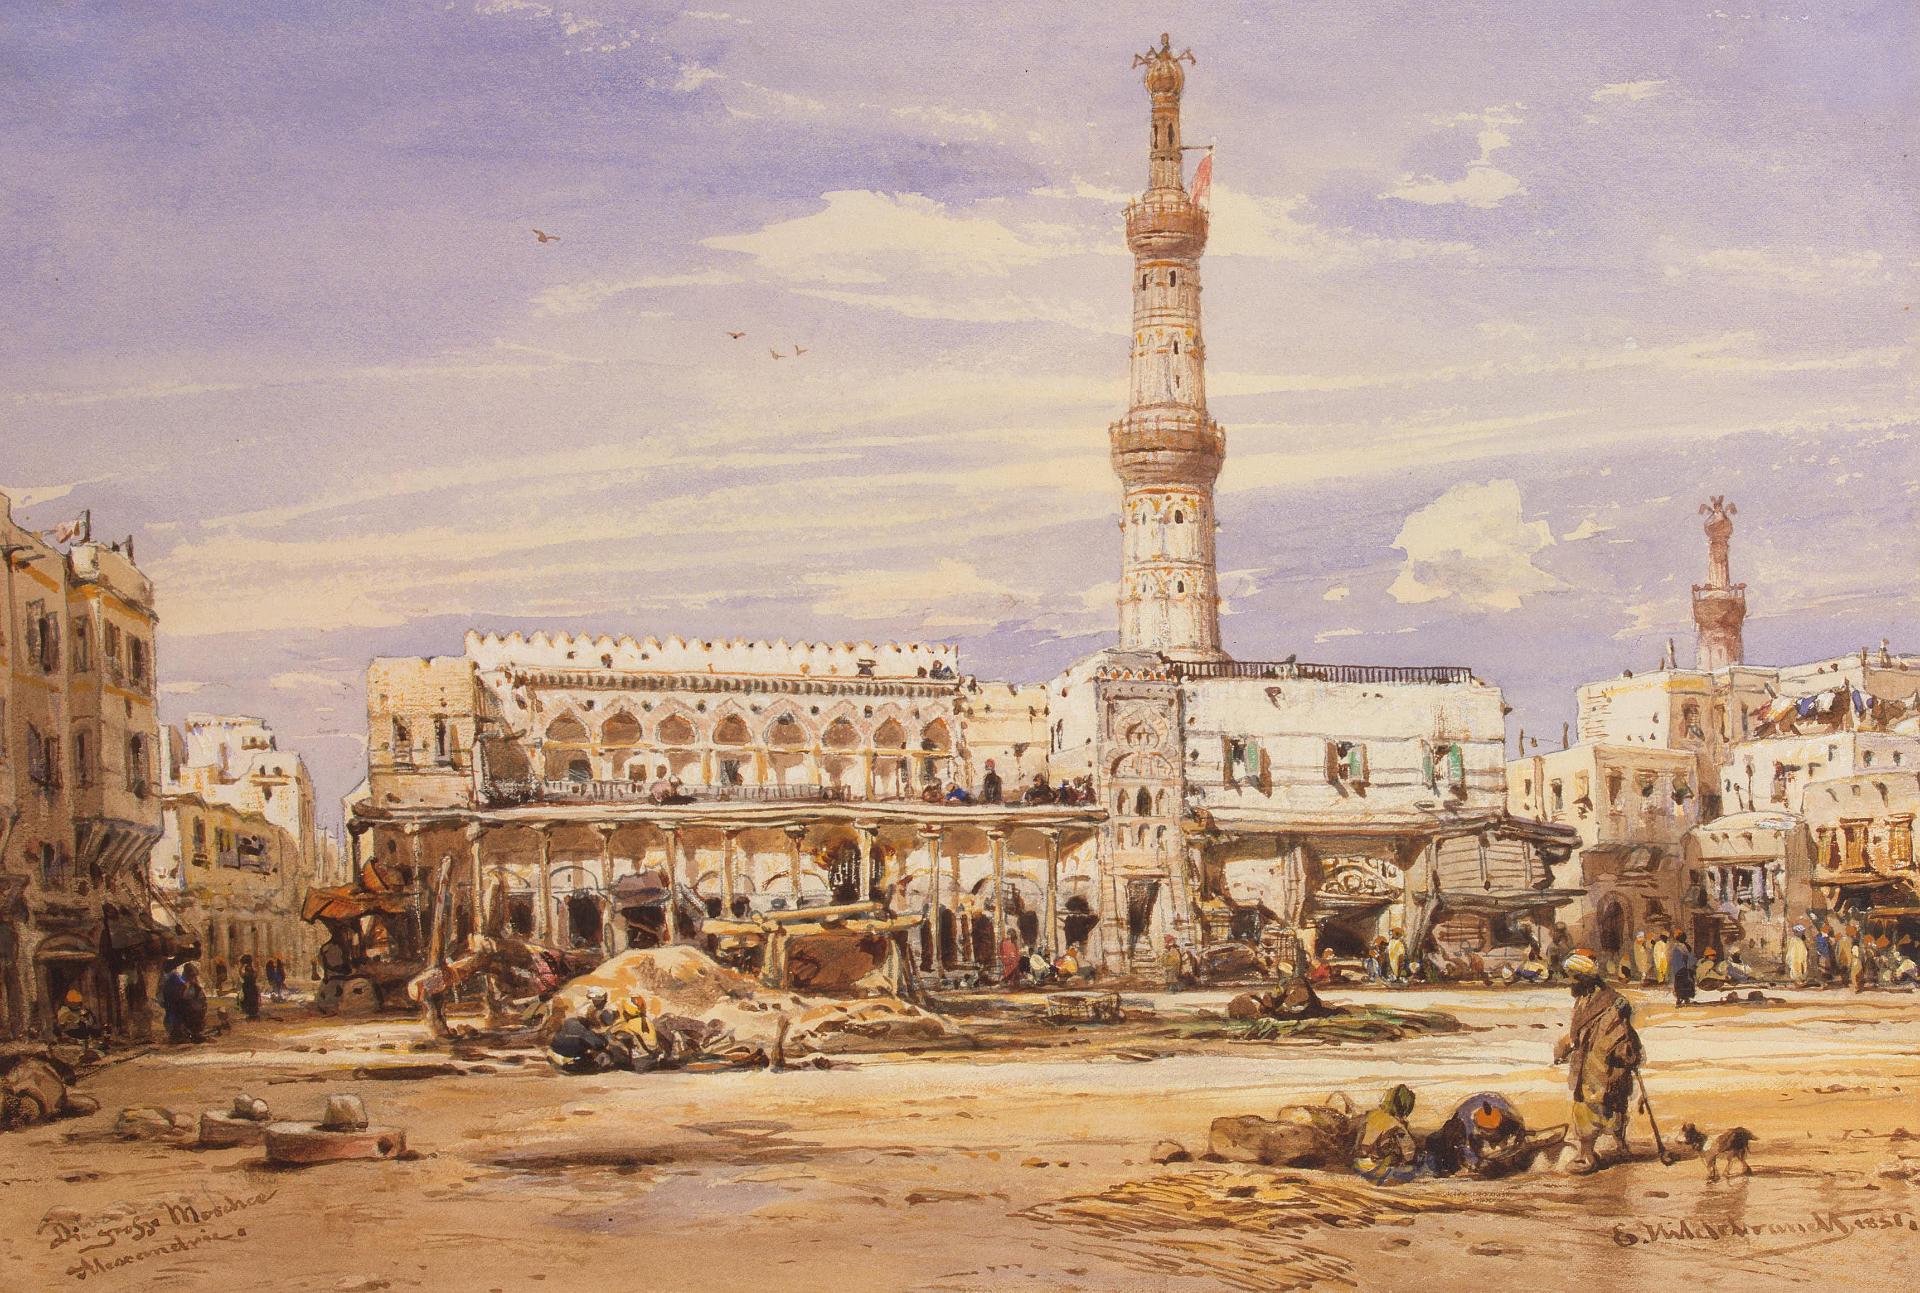 Эдуард Хильдебрандт. "Большая мечеть в Александрии". 1851.